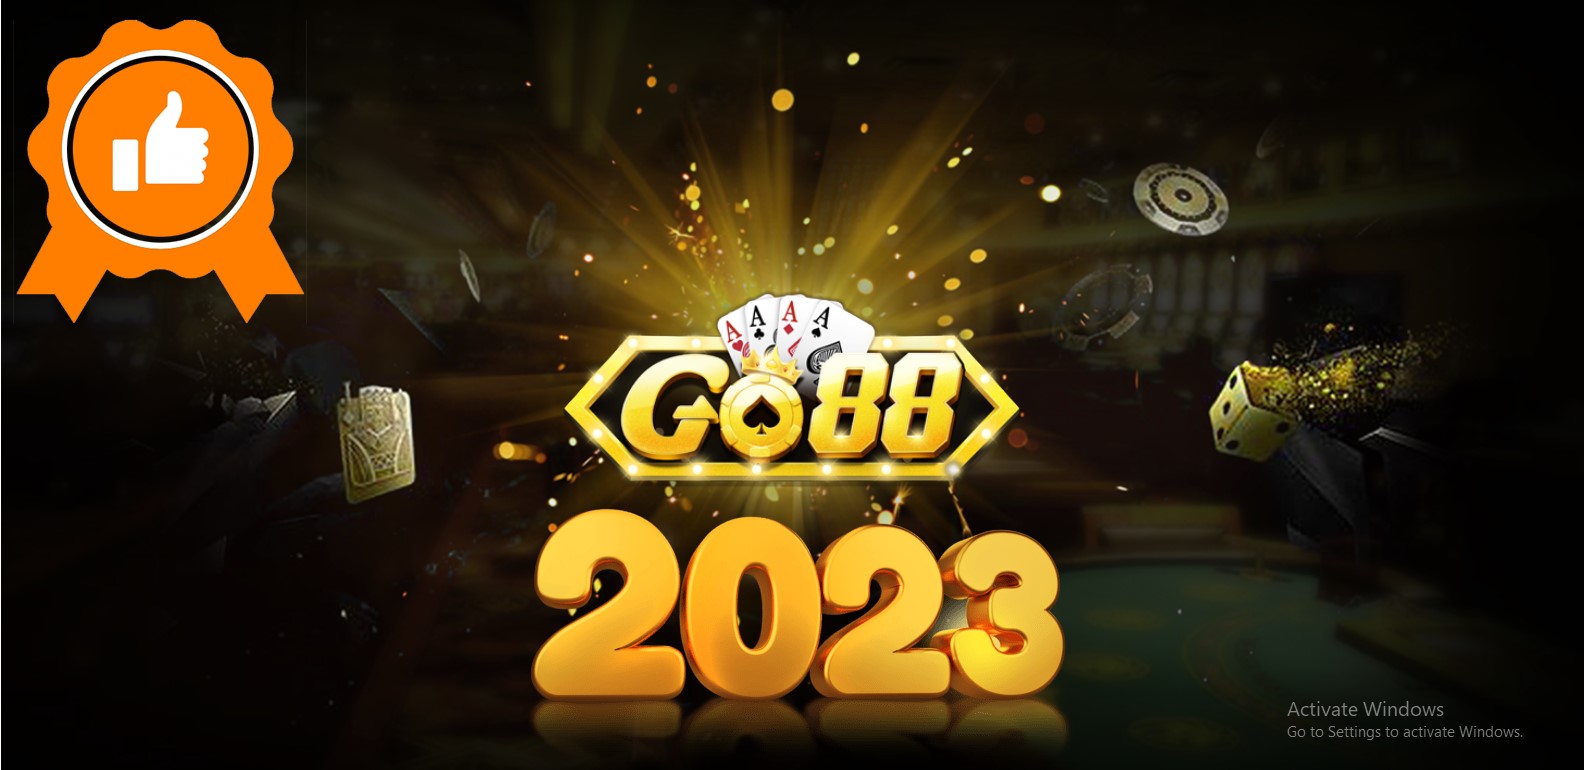 Go88 2023: Đồng Hành Cùng Cược Thủ Trên Hành Trình Đỉnh Cao